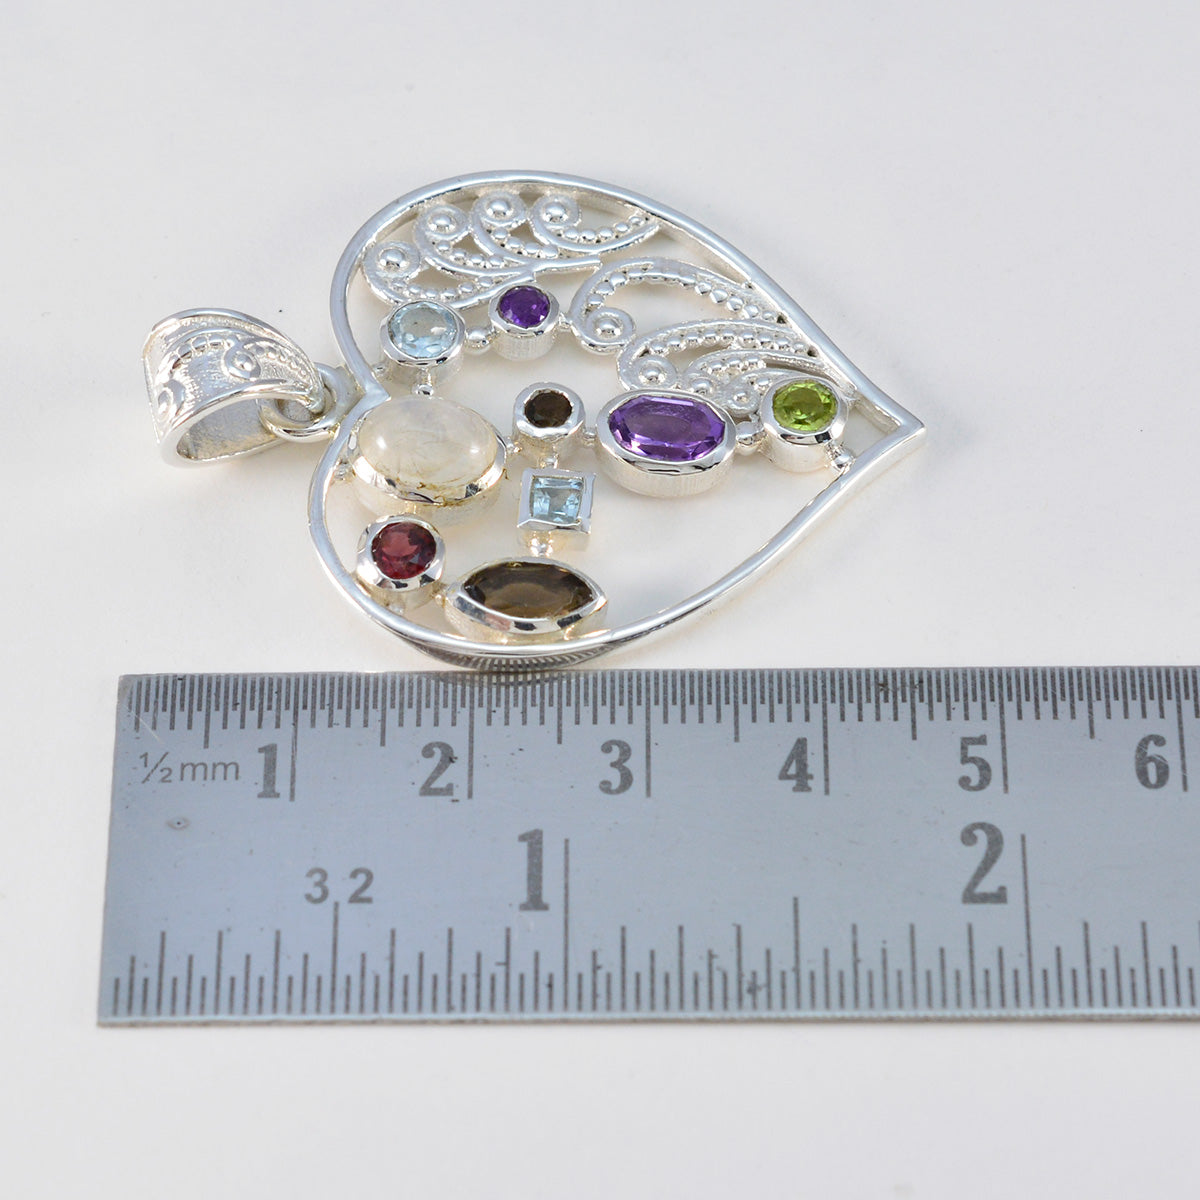 Riyo Prachtige edelstenen multi-facet multi-color multi-steen zilveren hanger cadeau voor vrouw